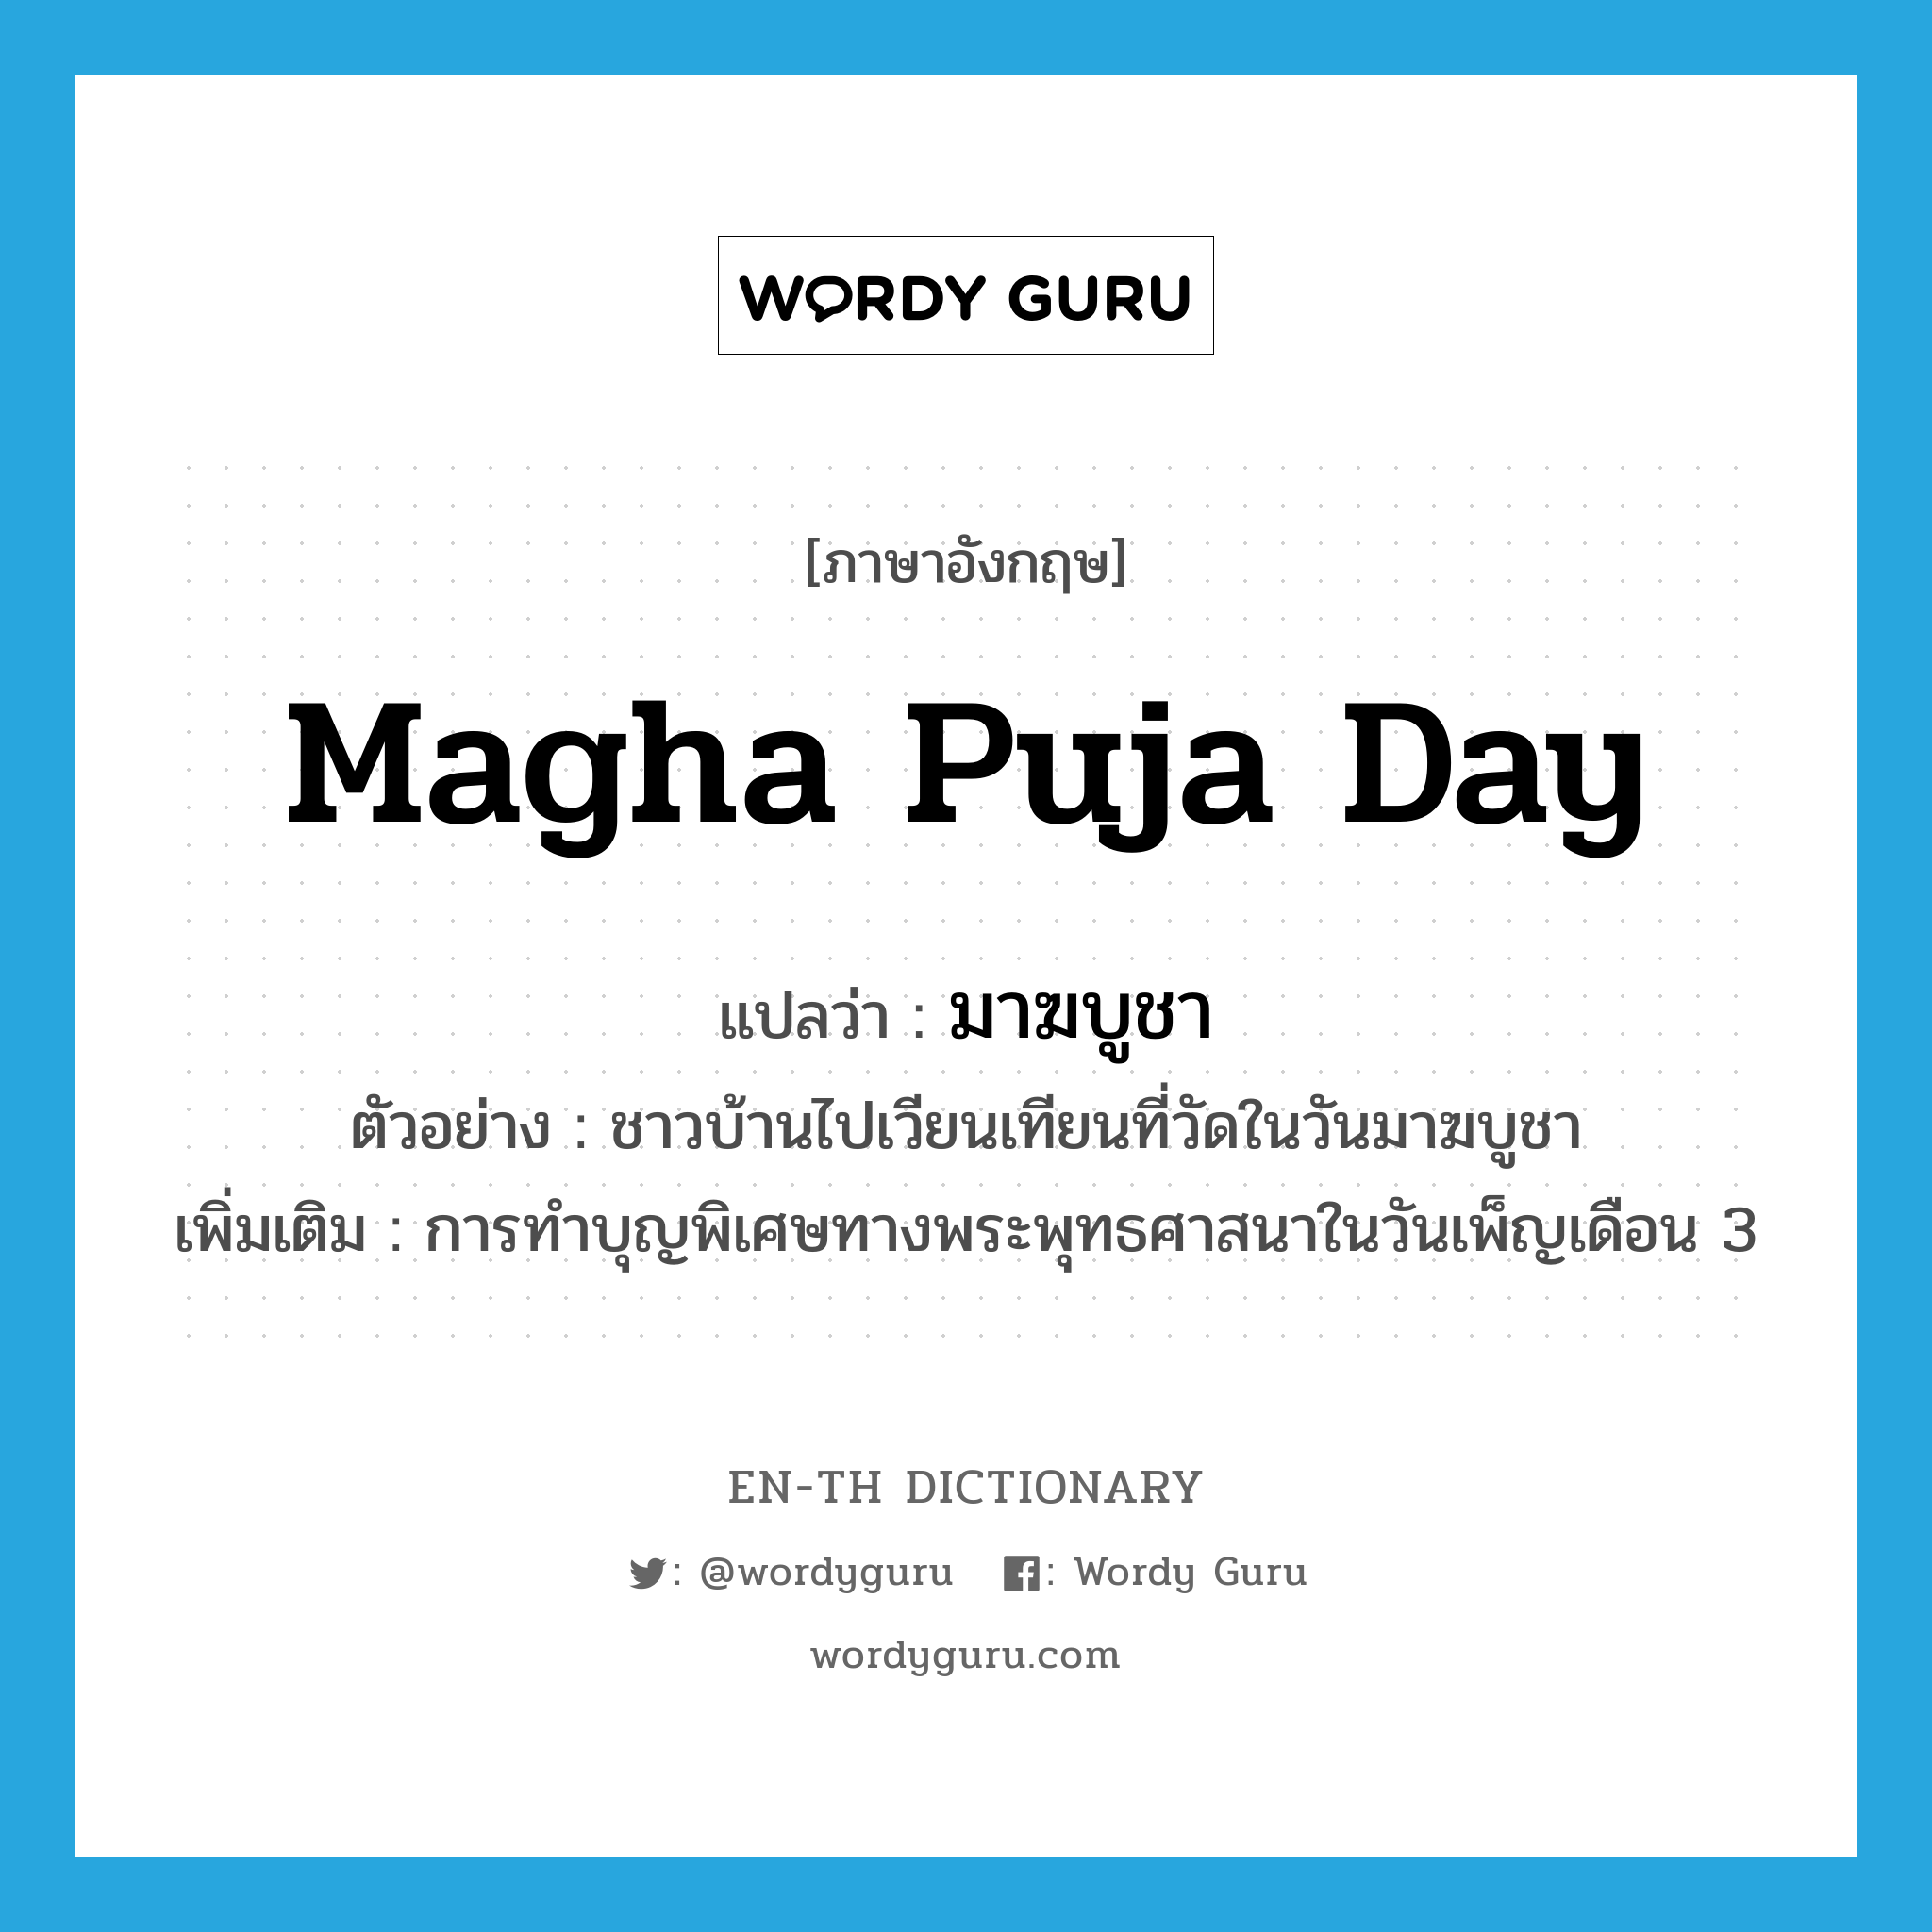 Magha Puja Day แปลว่า?, คำศัพท์ภาษาอังกฤษ Magha Puja Day แปลว่า มาฆบูชา ประเภท N ตัวอย่าง ชาวบ้านไปเวียนเทียนที่วัดในวันมาฆบูชา เพิ่มเติม การทำบุญพิเศษทางพระพุทธศาสนาในวันเพ็ญเดือน 3 หมวด N